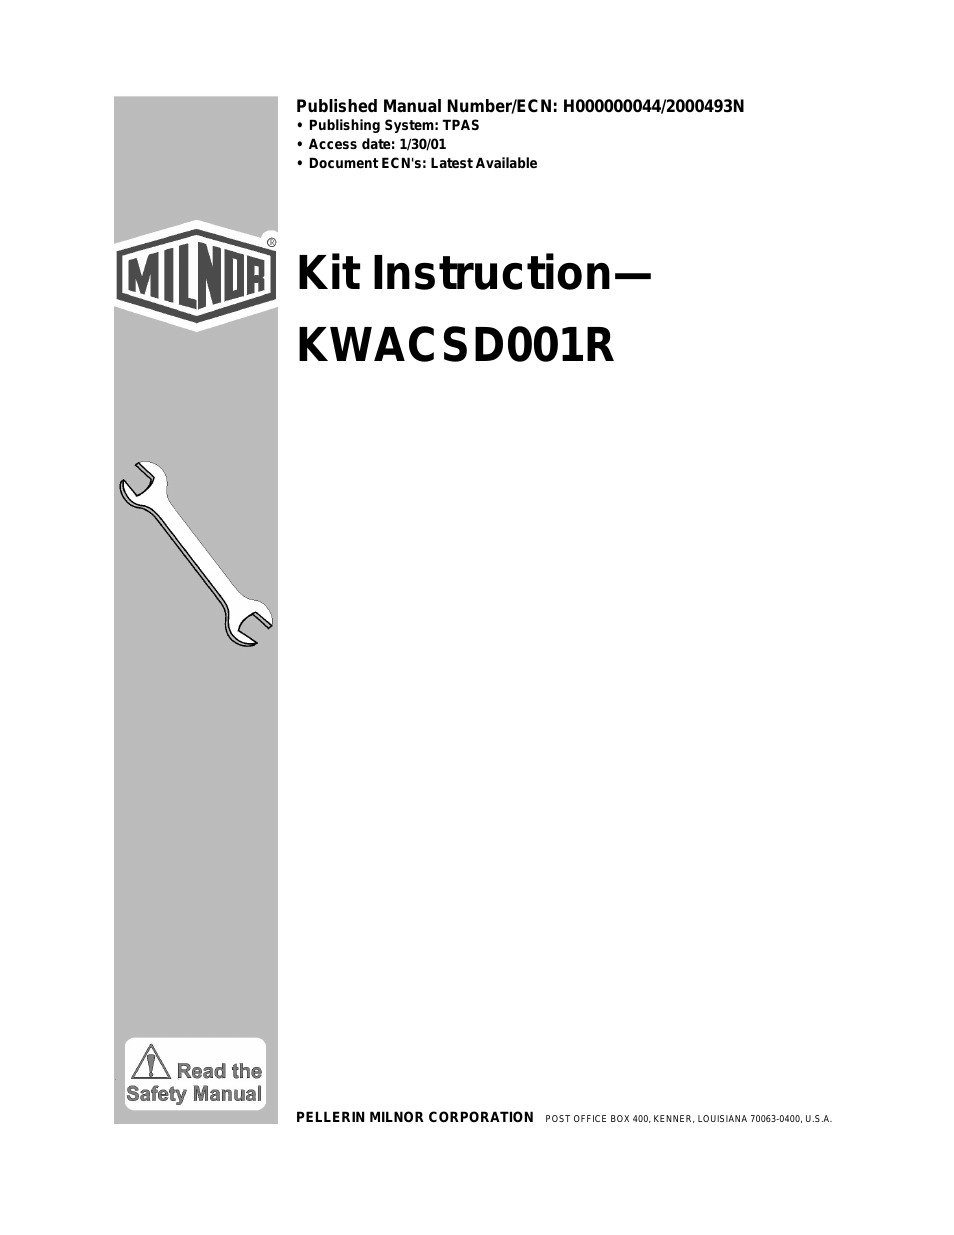 KWACSD001R